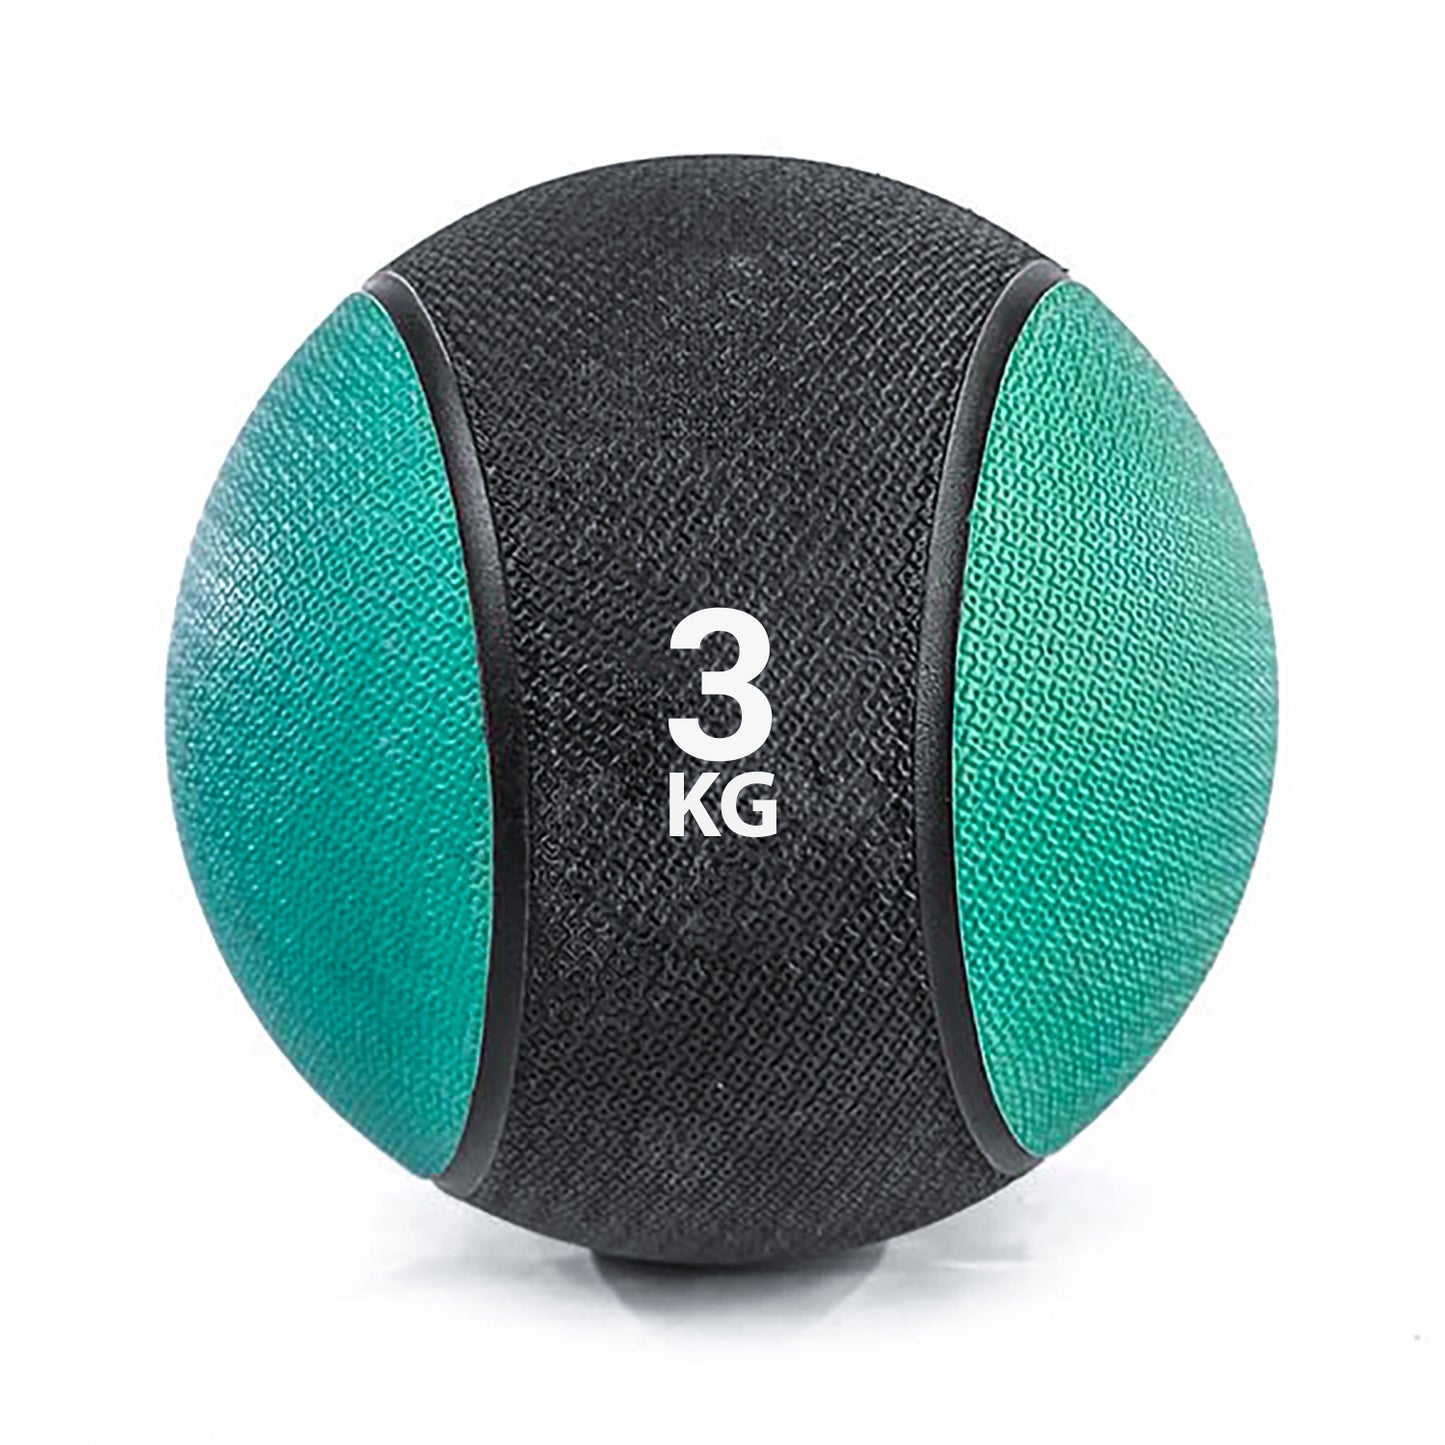 كرة طبية من المطاط لاعادة التأهيل و اللياقة البدنية - لون اسود و اخضر - وزن 3 كيلو جرام